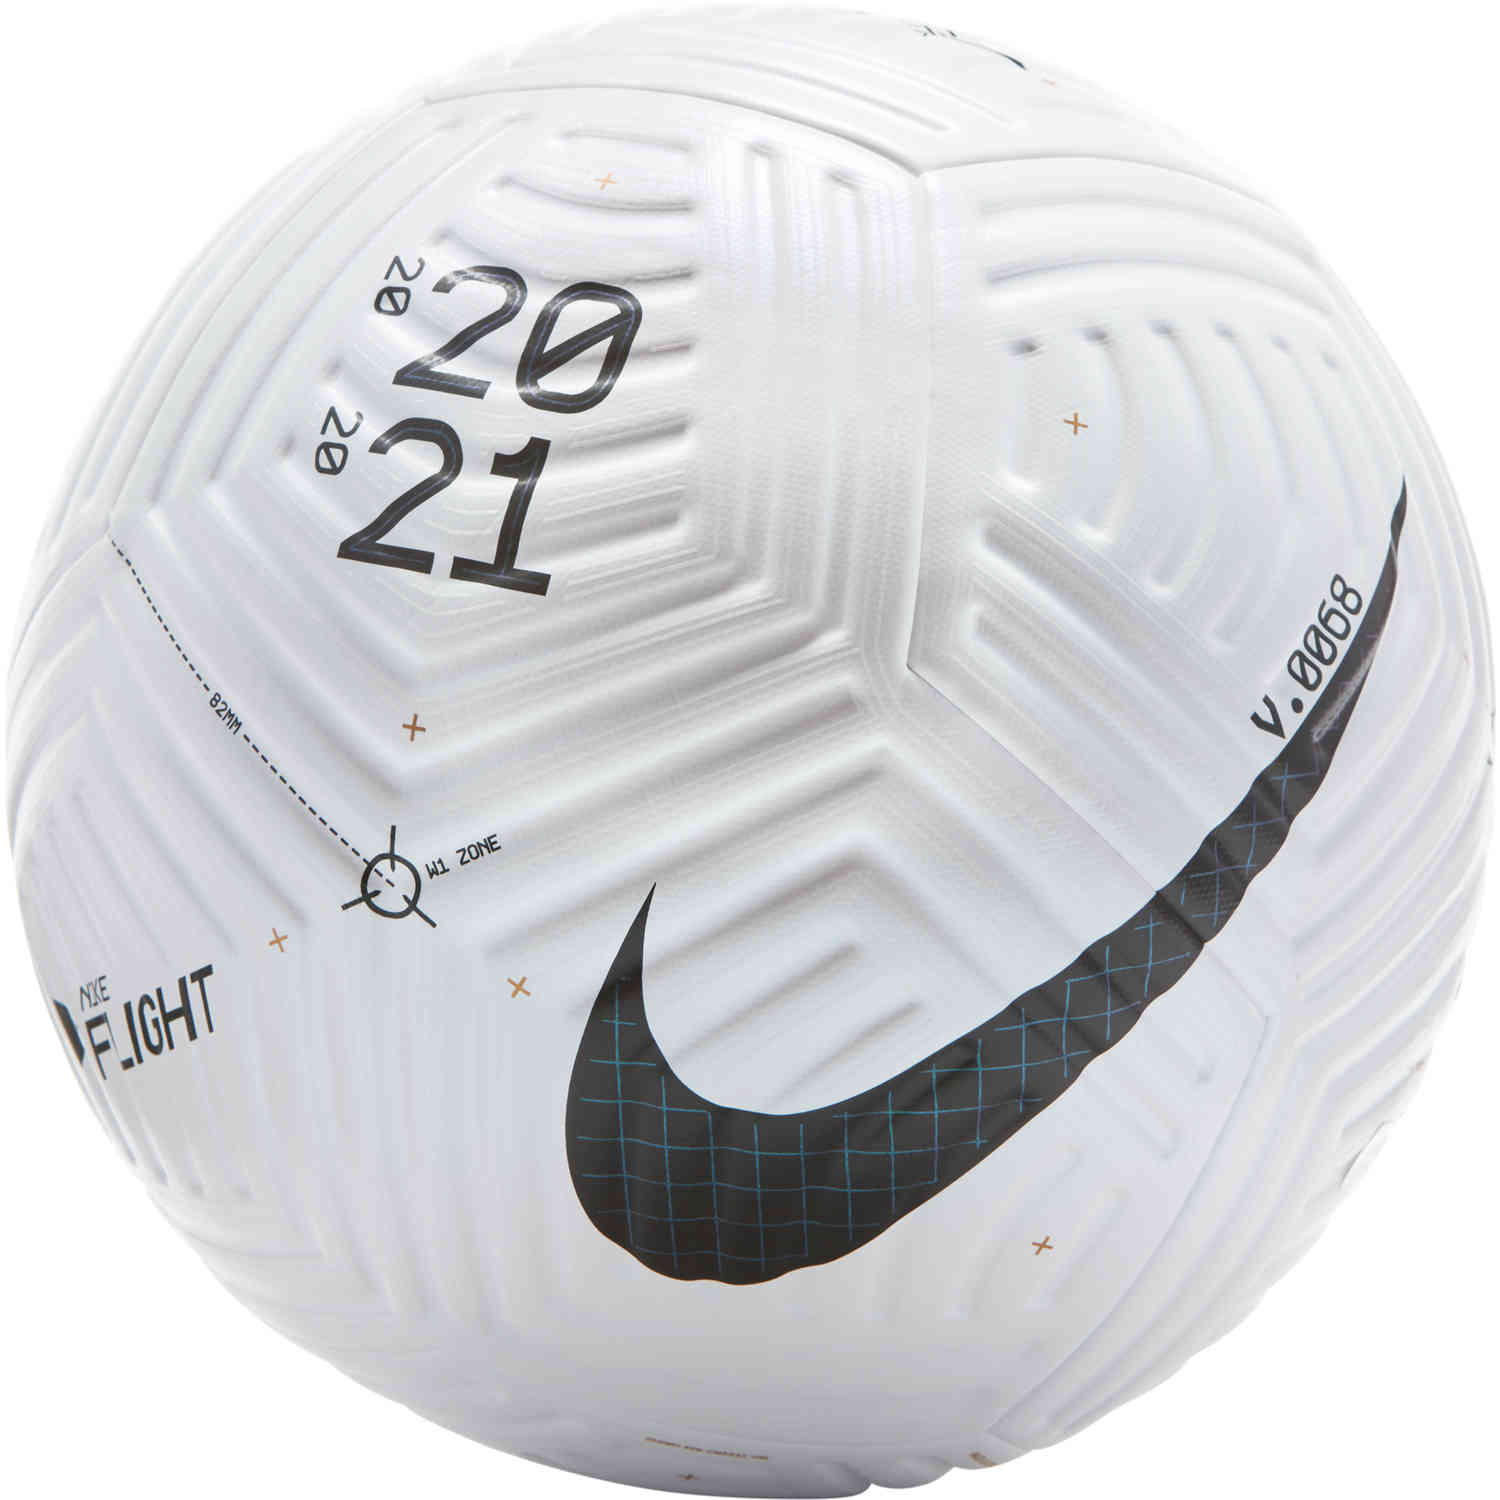 Nike Flight Match Soccer Ball - White & - Master